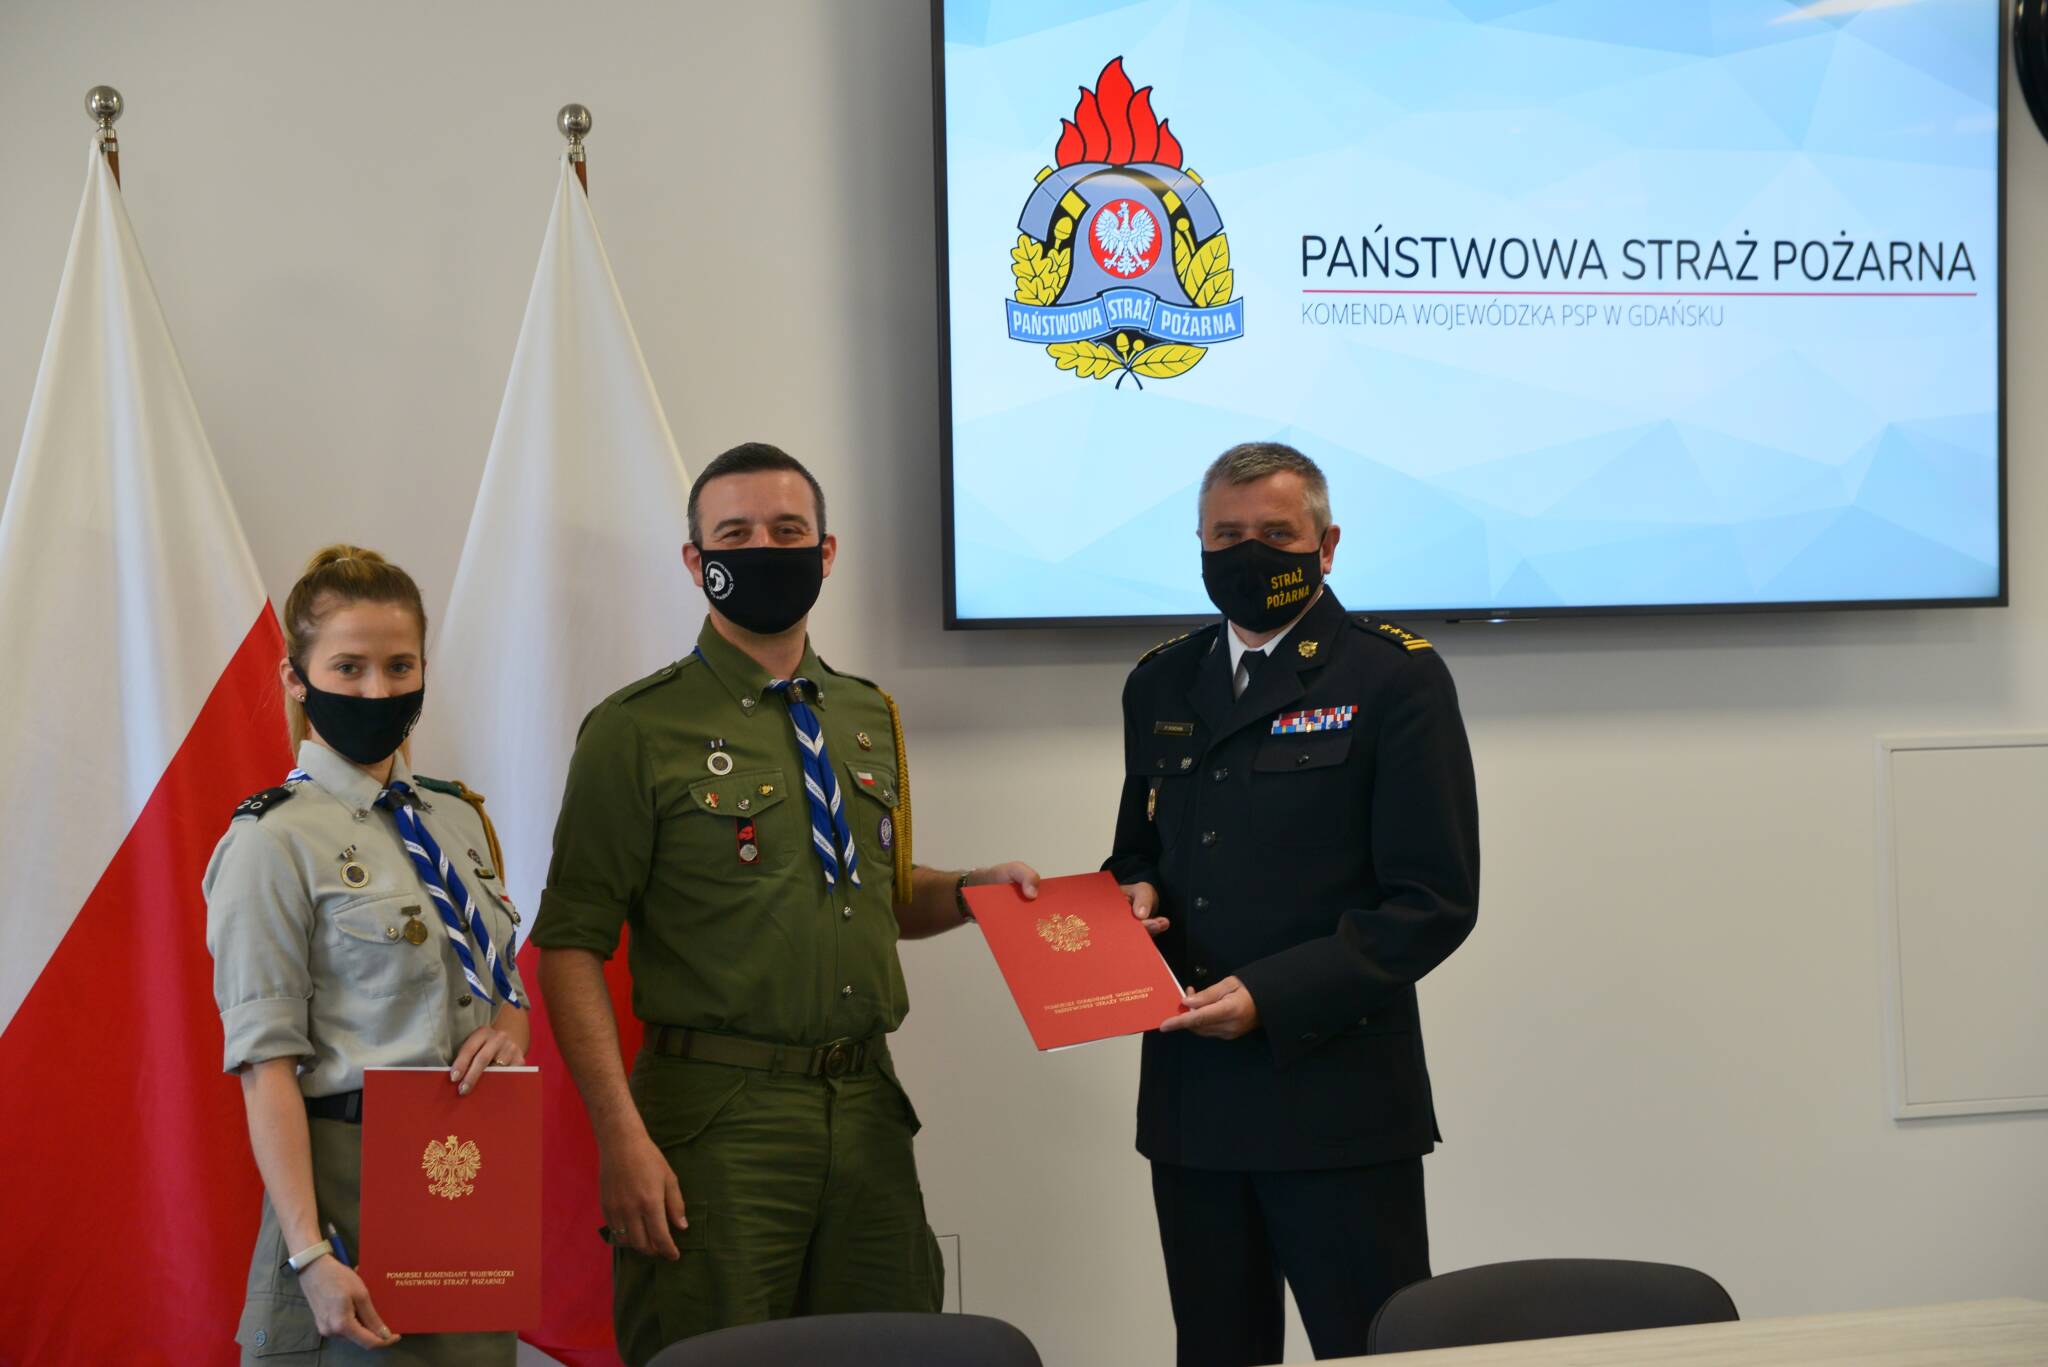 Chorągiew podpisała porozumienie o współpracy z Komendą Wojewódzkiej Pomorskiej Państwowej Straży Pożarnej w Gdańsku